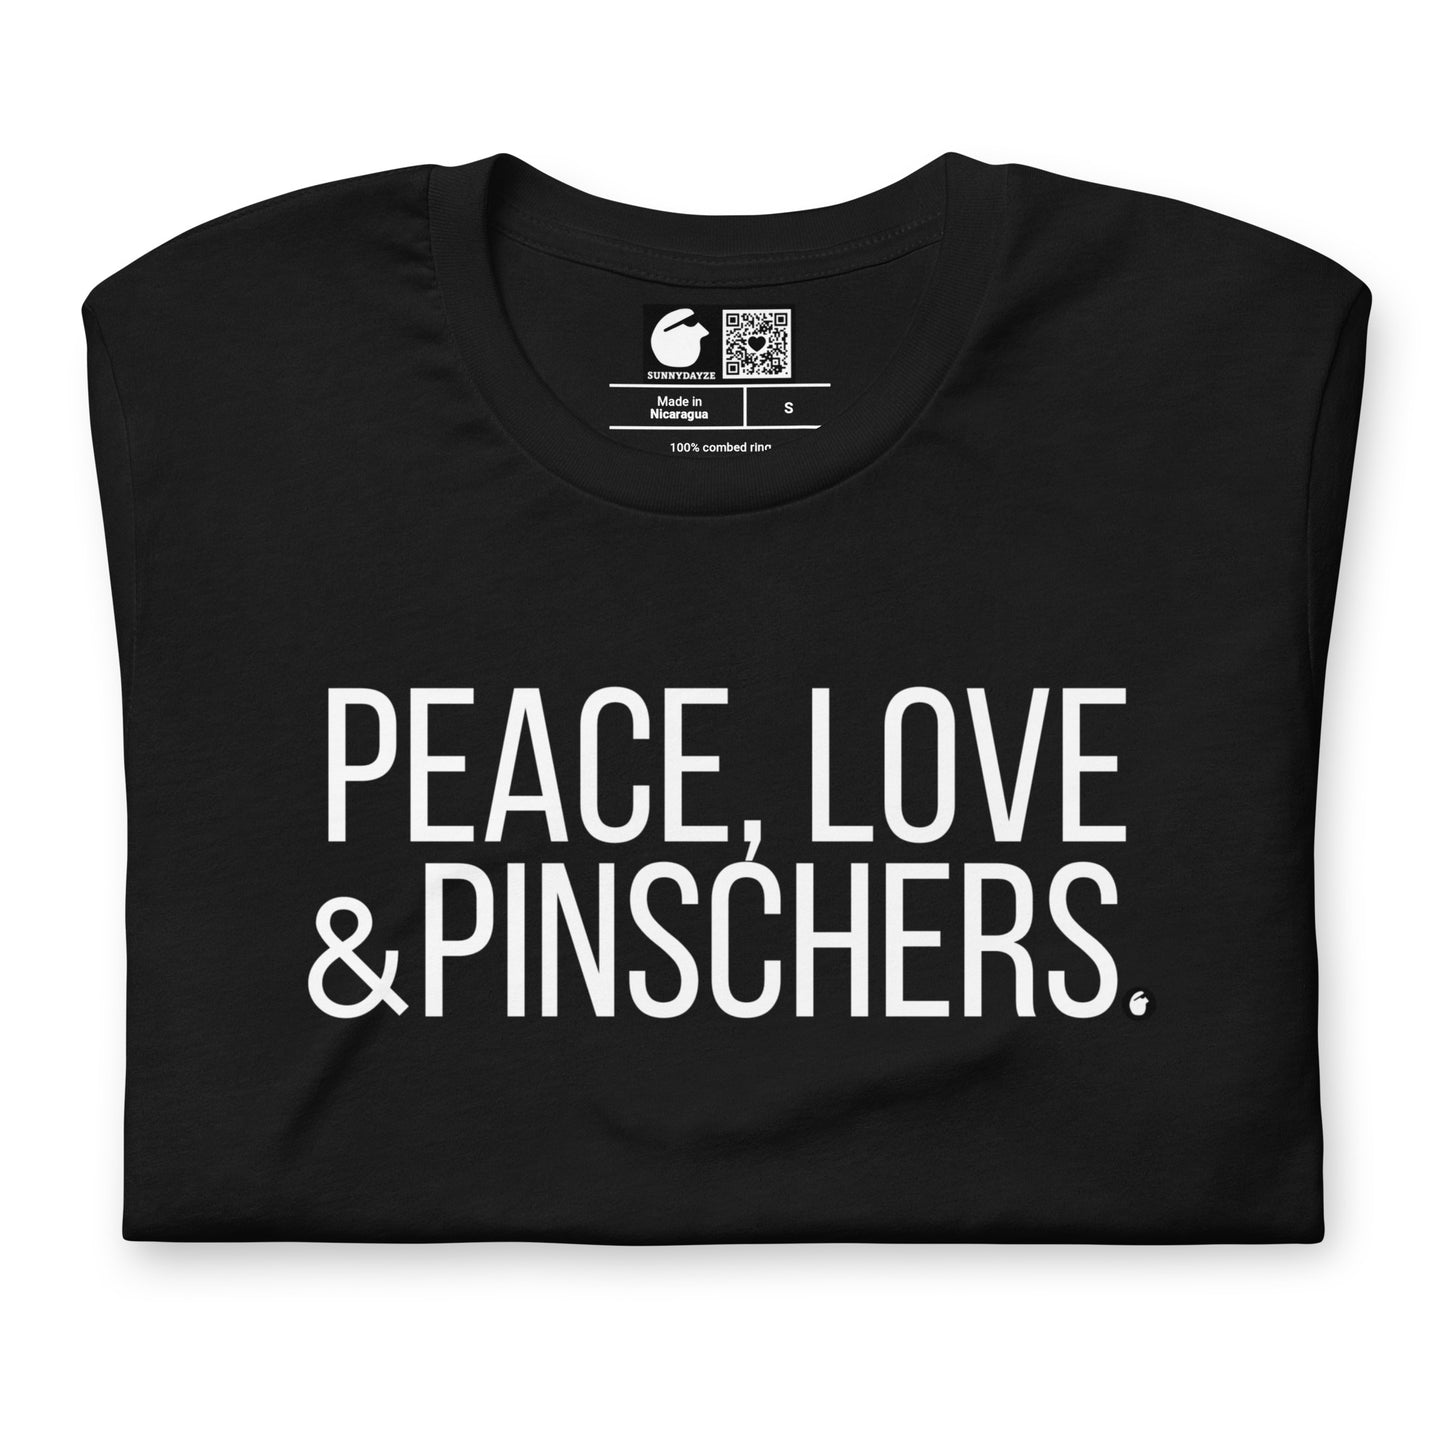 PINSCHERS Short-Sleeve Unisex t-shirt